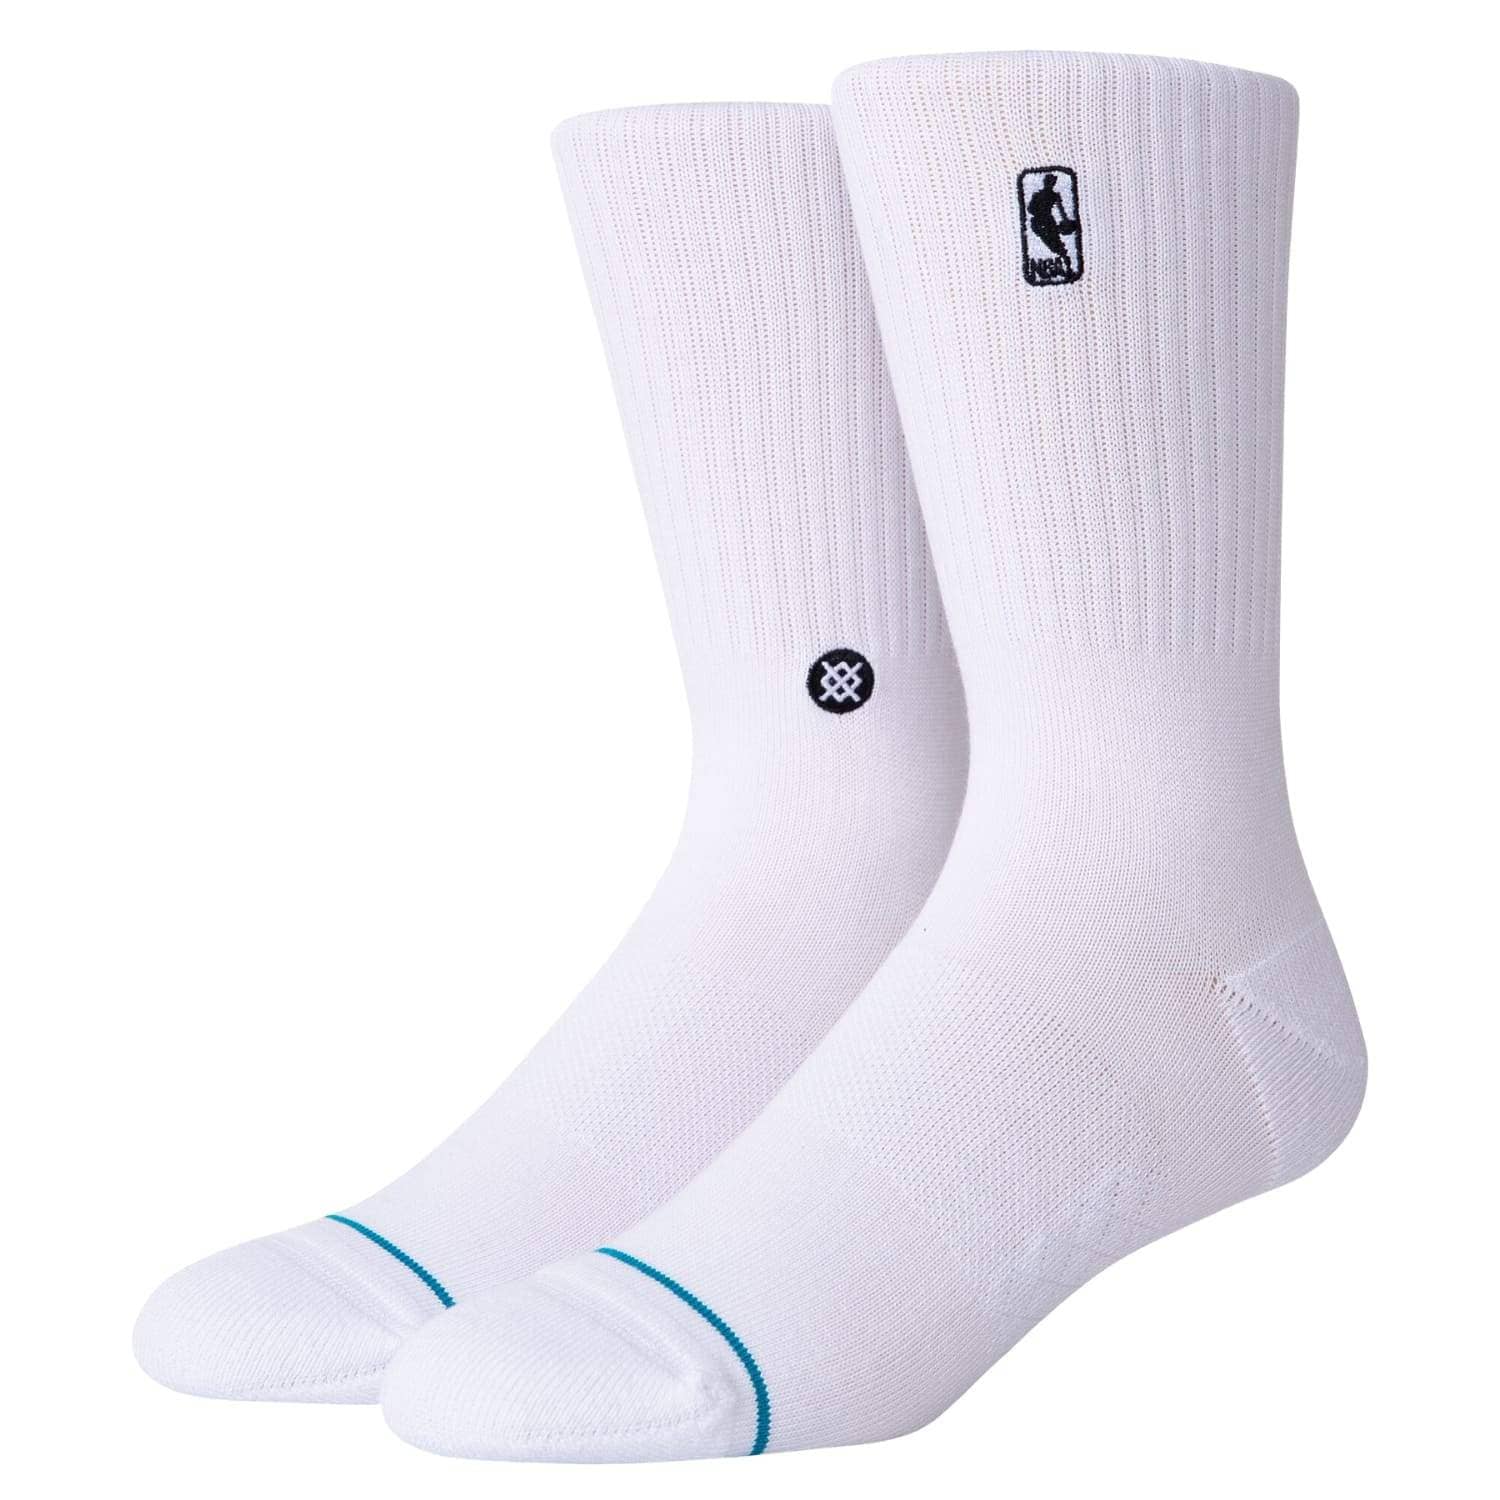 Stance NBA Logoman ST Socks White Mens Crew Length Socks by Stance